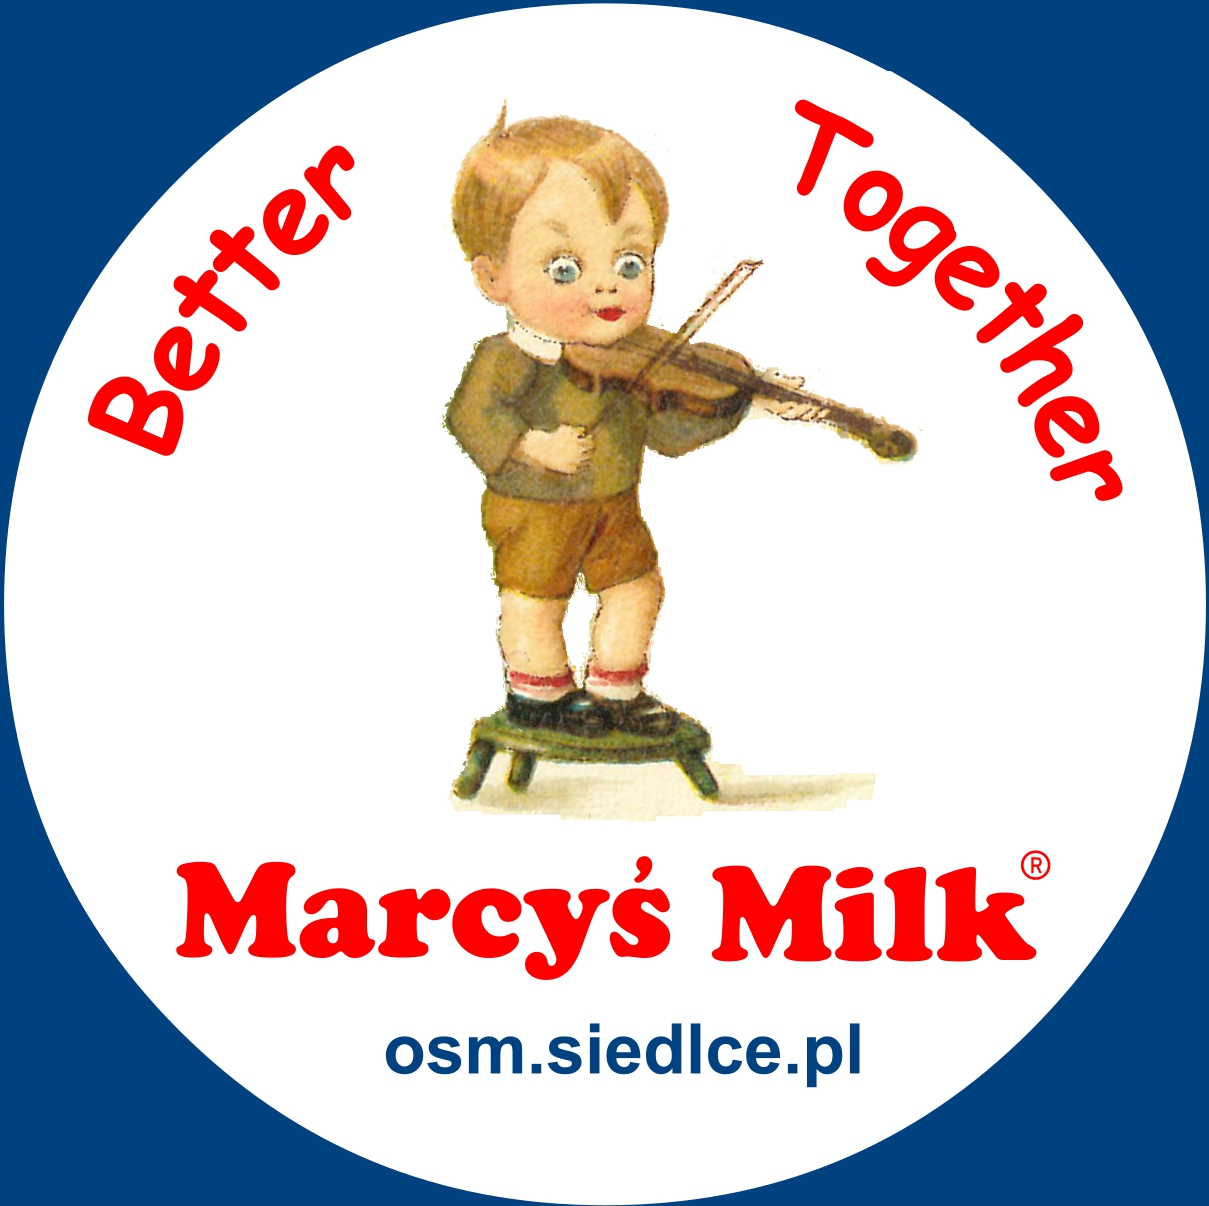 Marcyś Milk, Better Together, osm.siedlce.pl